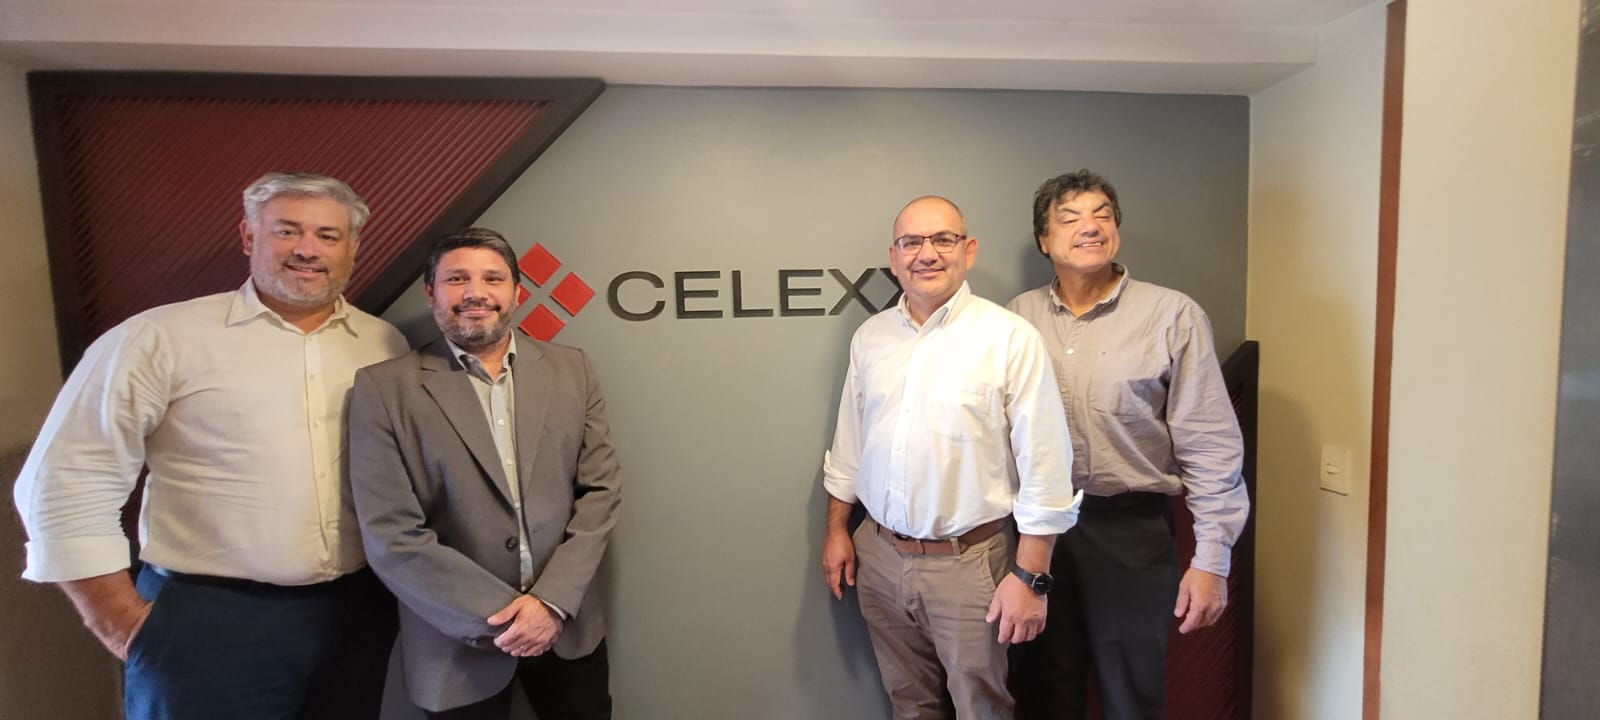 Celexx will represent Artic in Paraguay